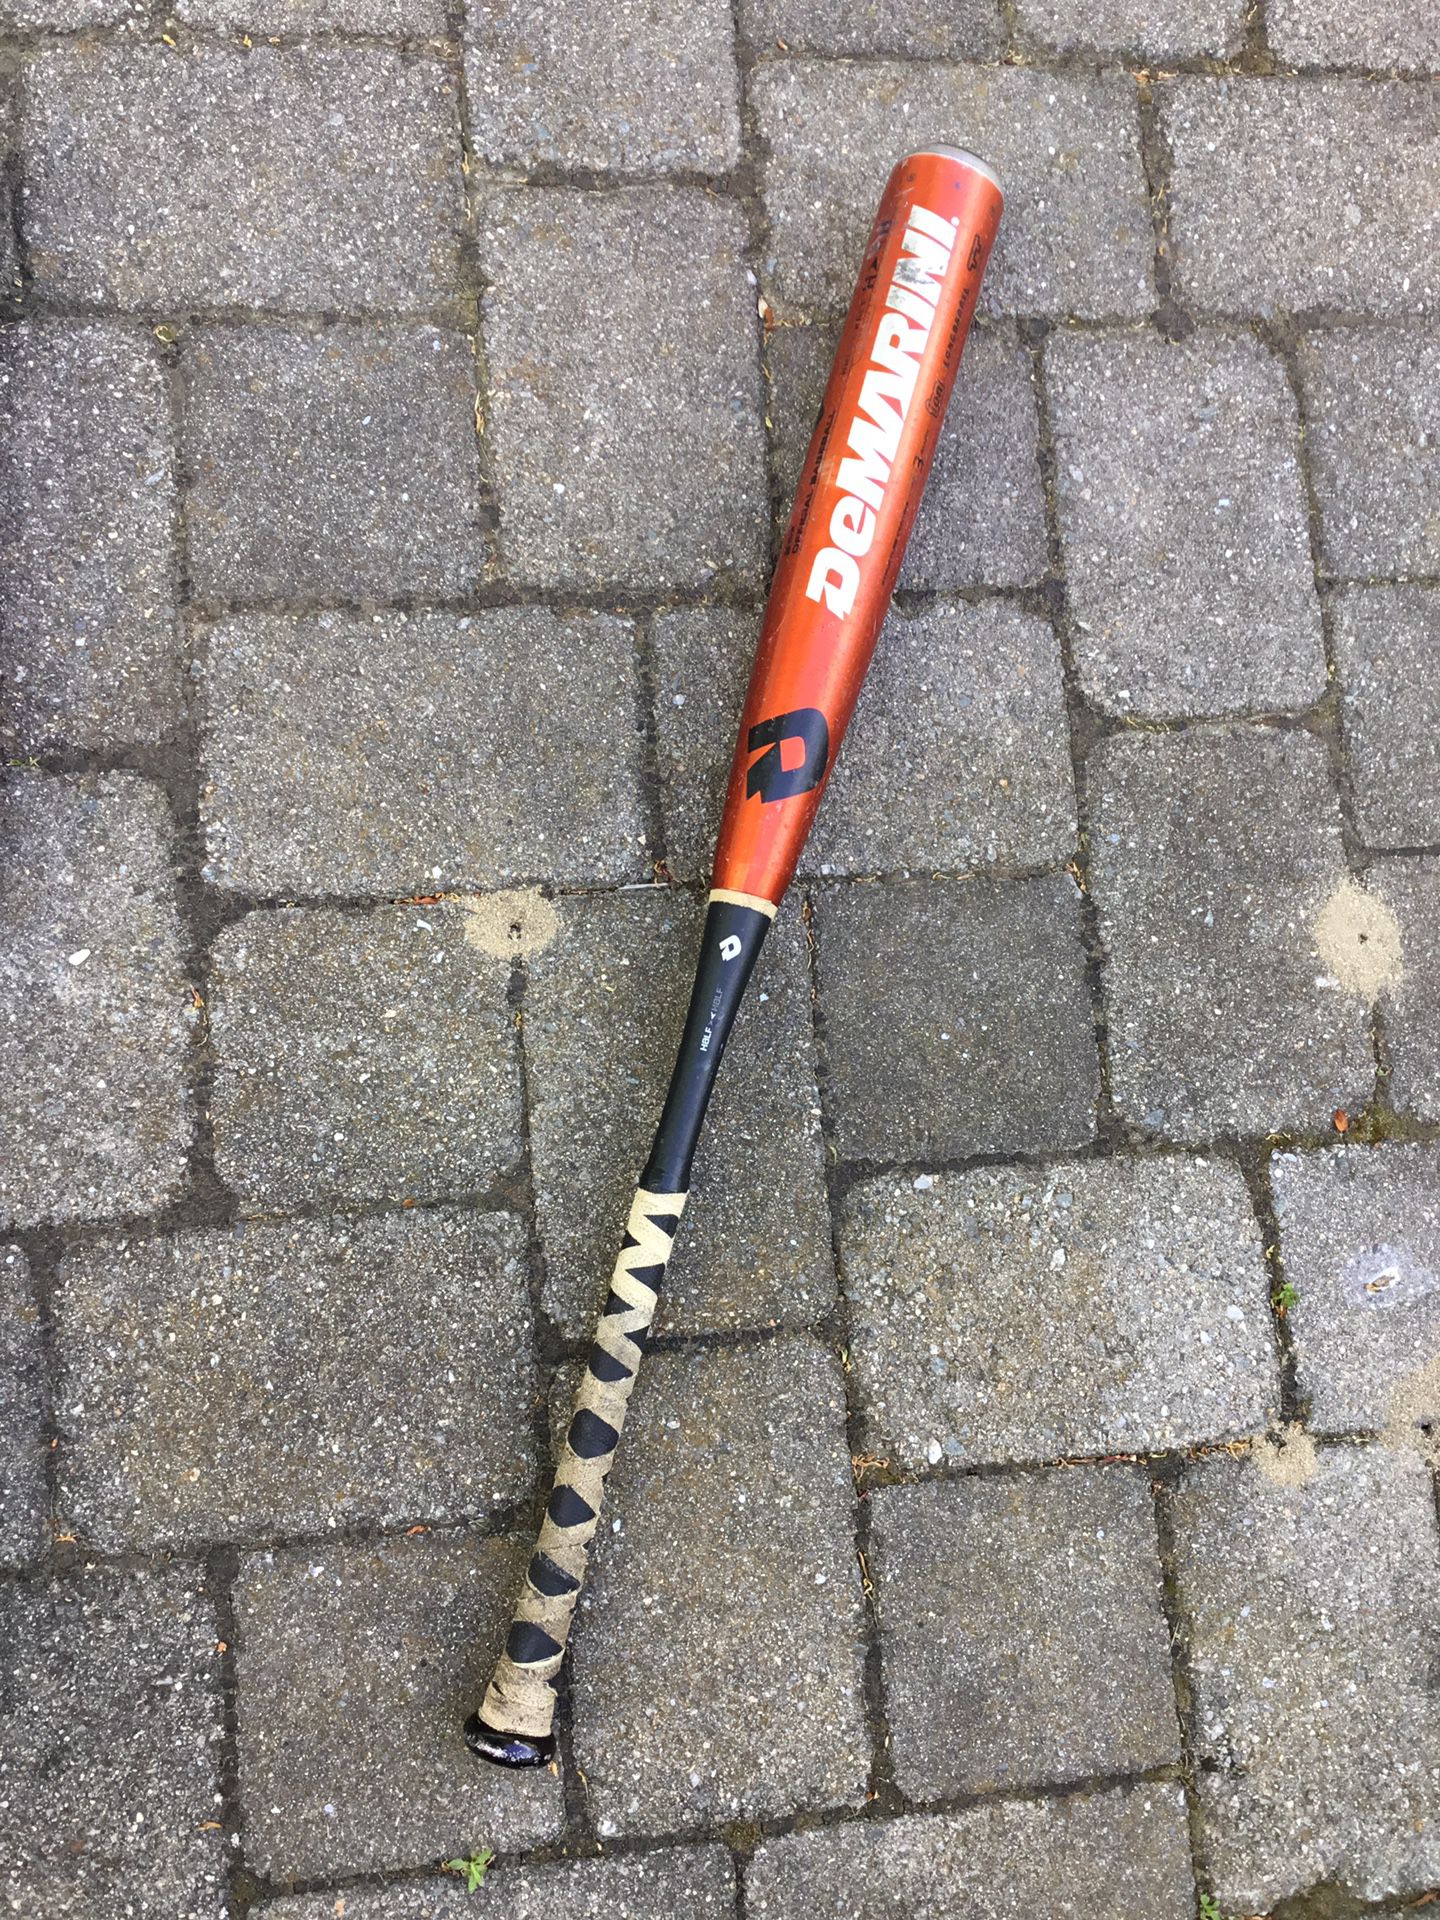 DeMarini baseball bat